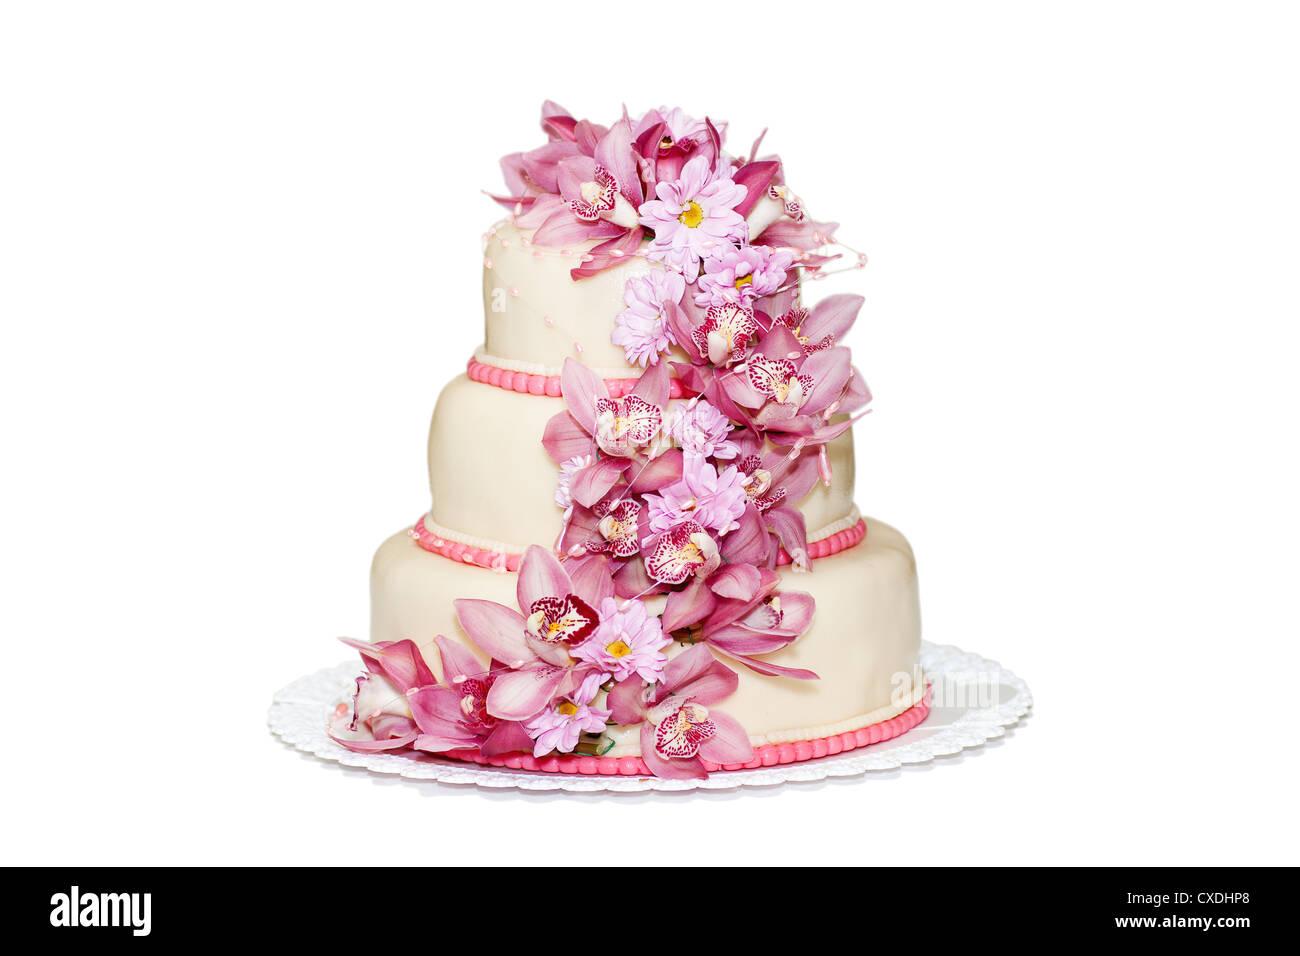 Gâteau de mariage traditionnel sur fond blanc Banque D'Images